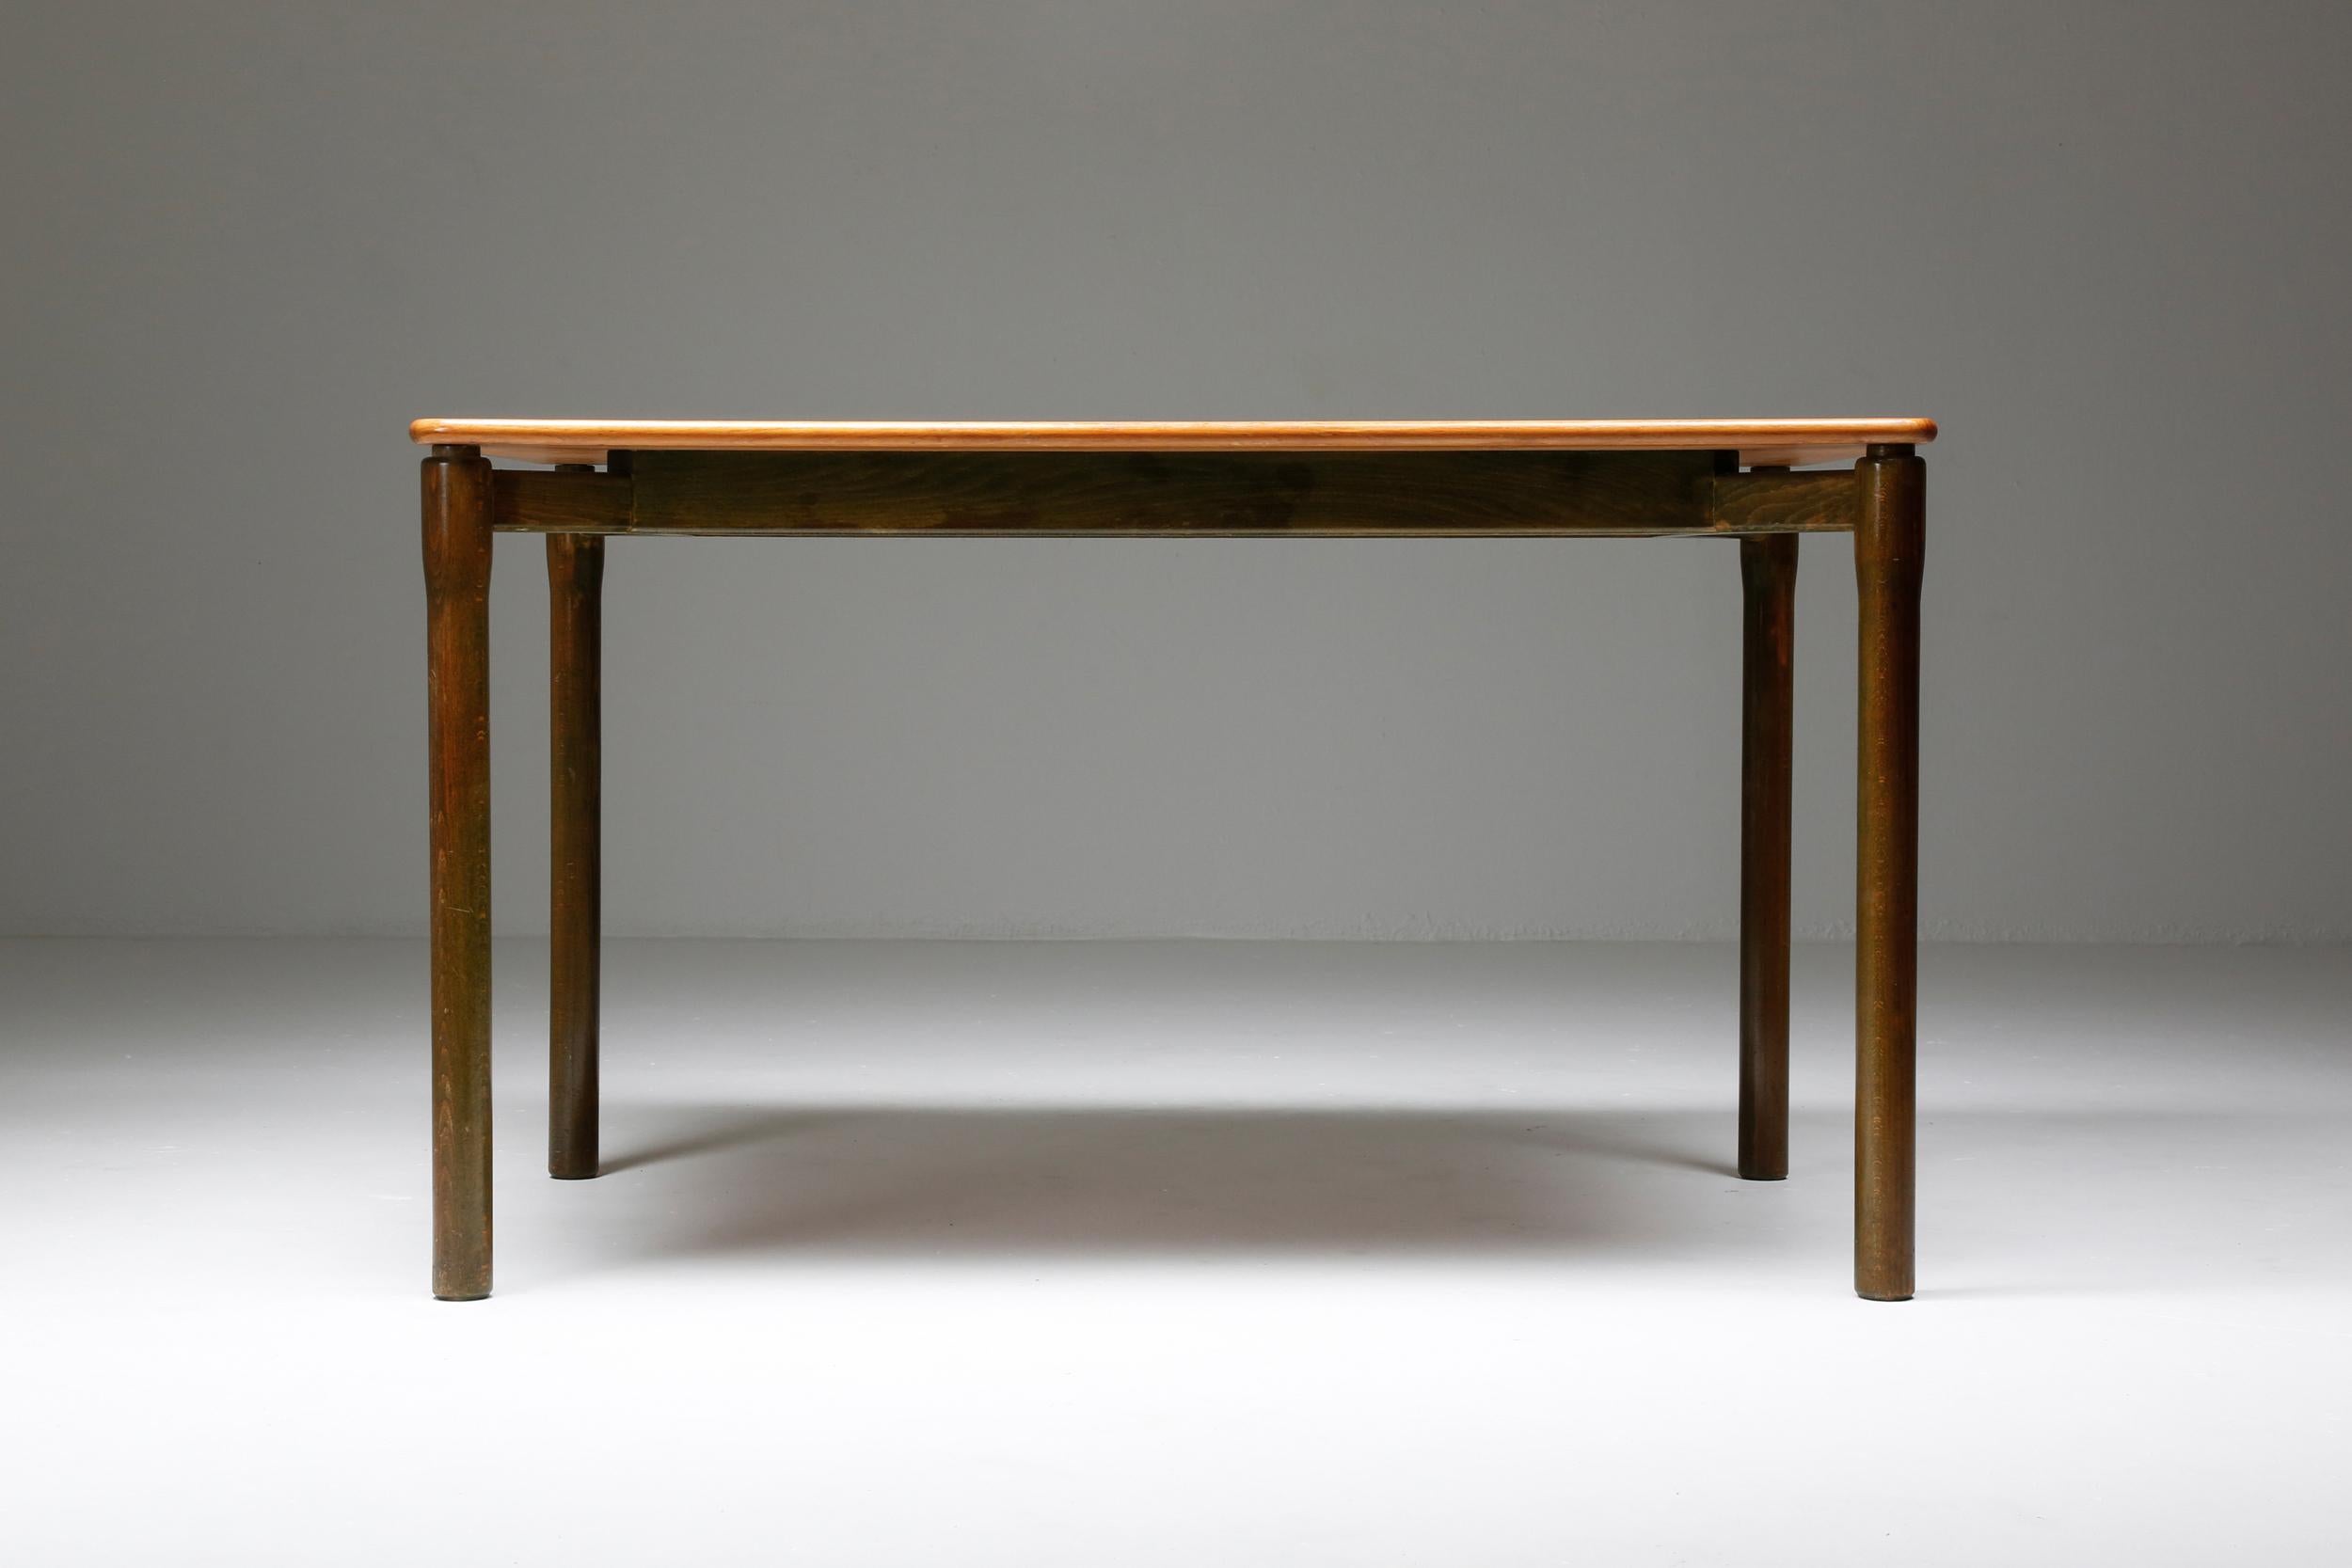 Vico Magistretti Carimate Tischset für Cassina Italien, Design, um 1960

Verspielter quadratischer Tisch, entworfen von Vico Magistrat für Cassina in den frühen Sechzigern. Der Tisch hat eine Holzplatte, die auf vier zylindrischen roten Beinen ruht.